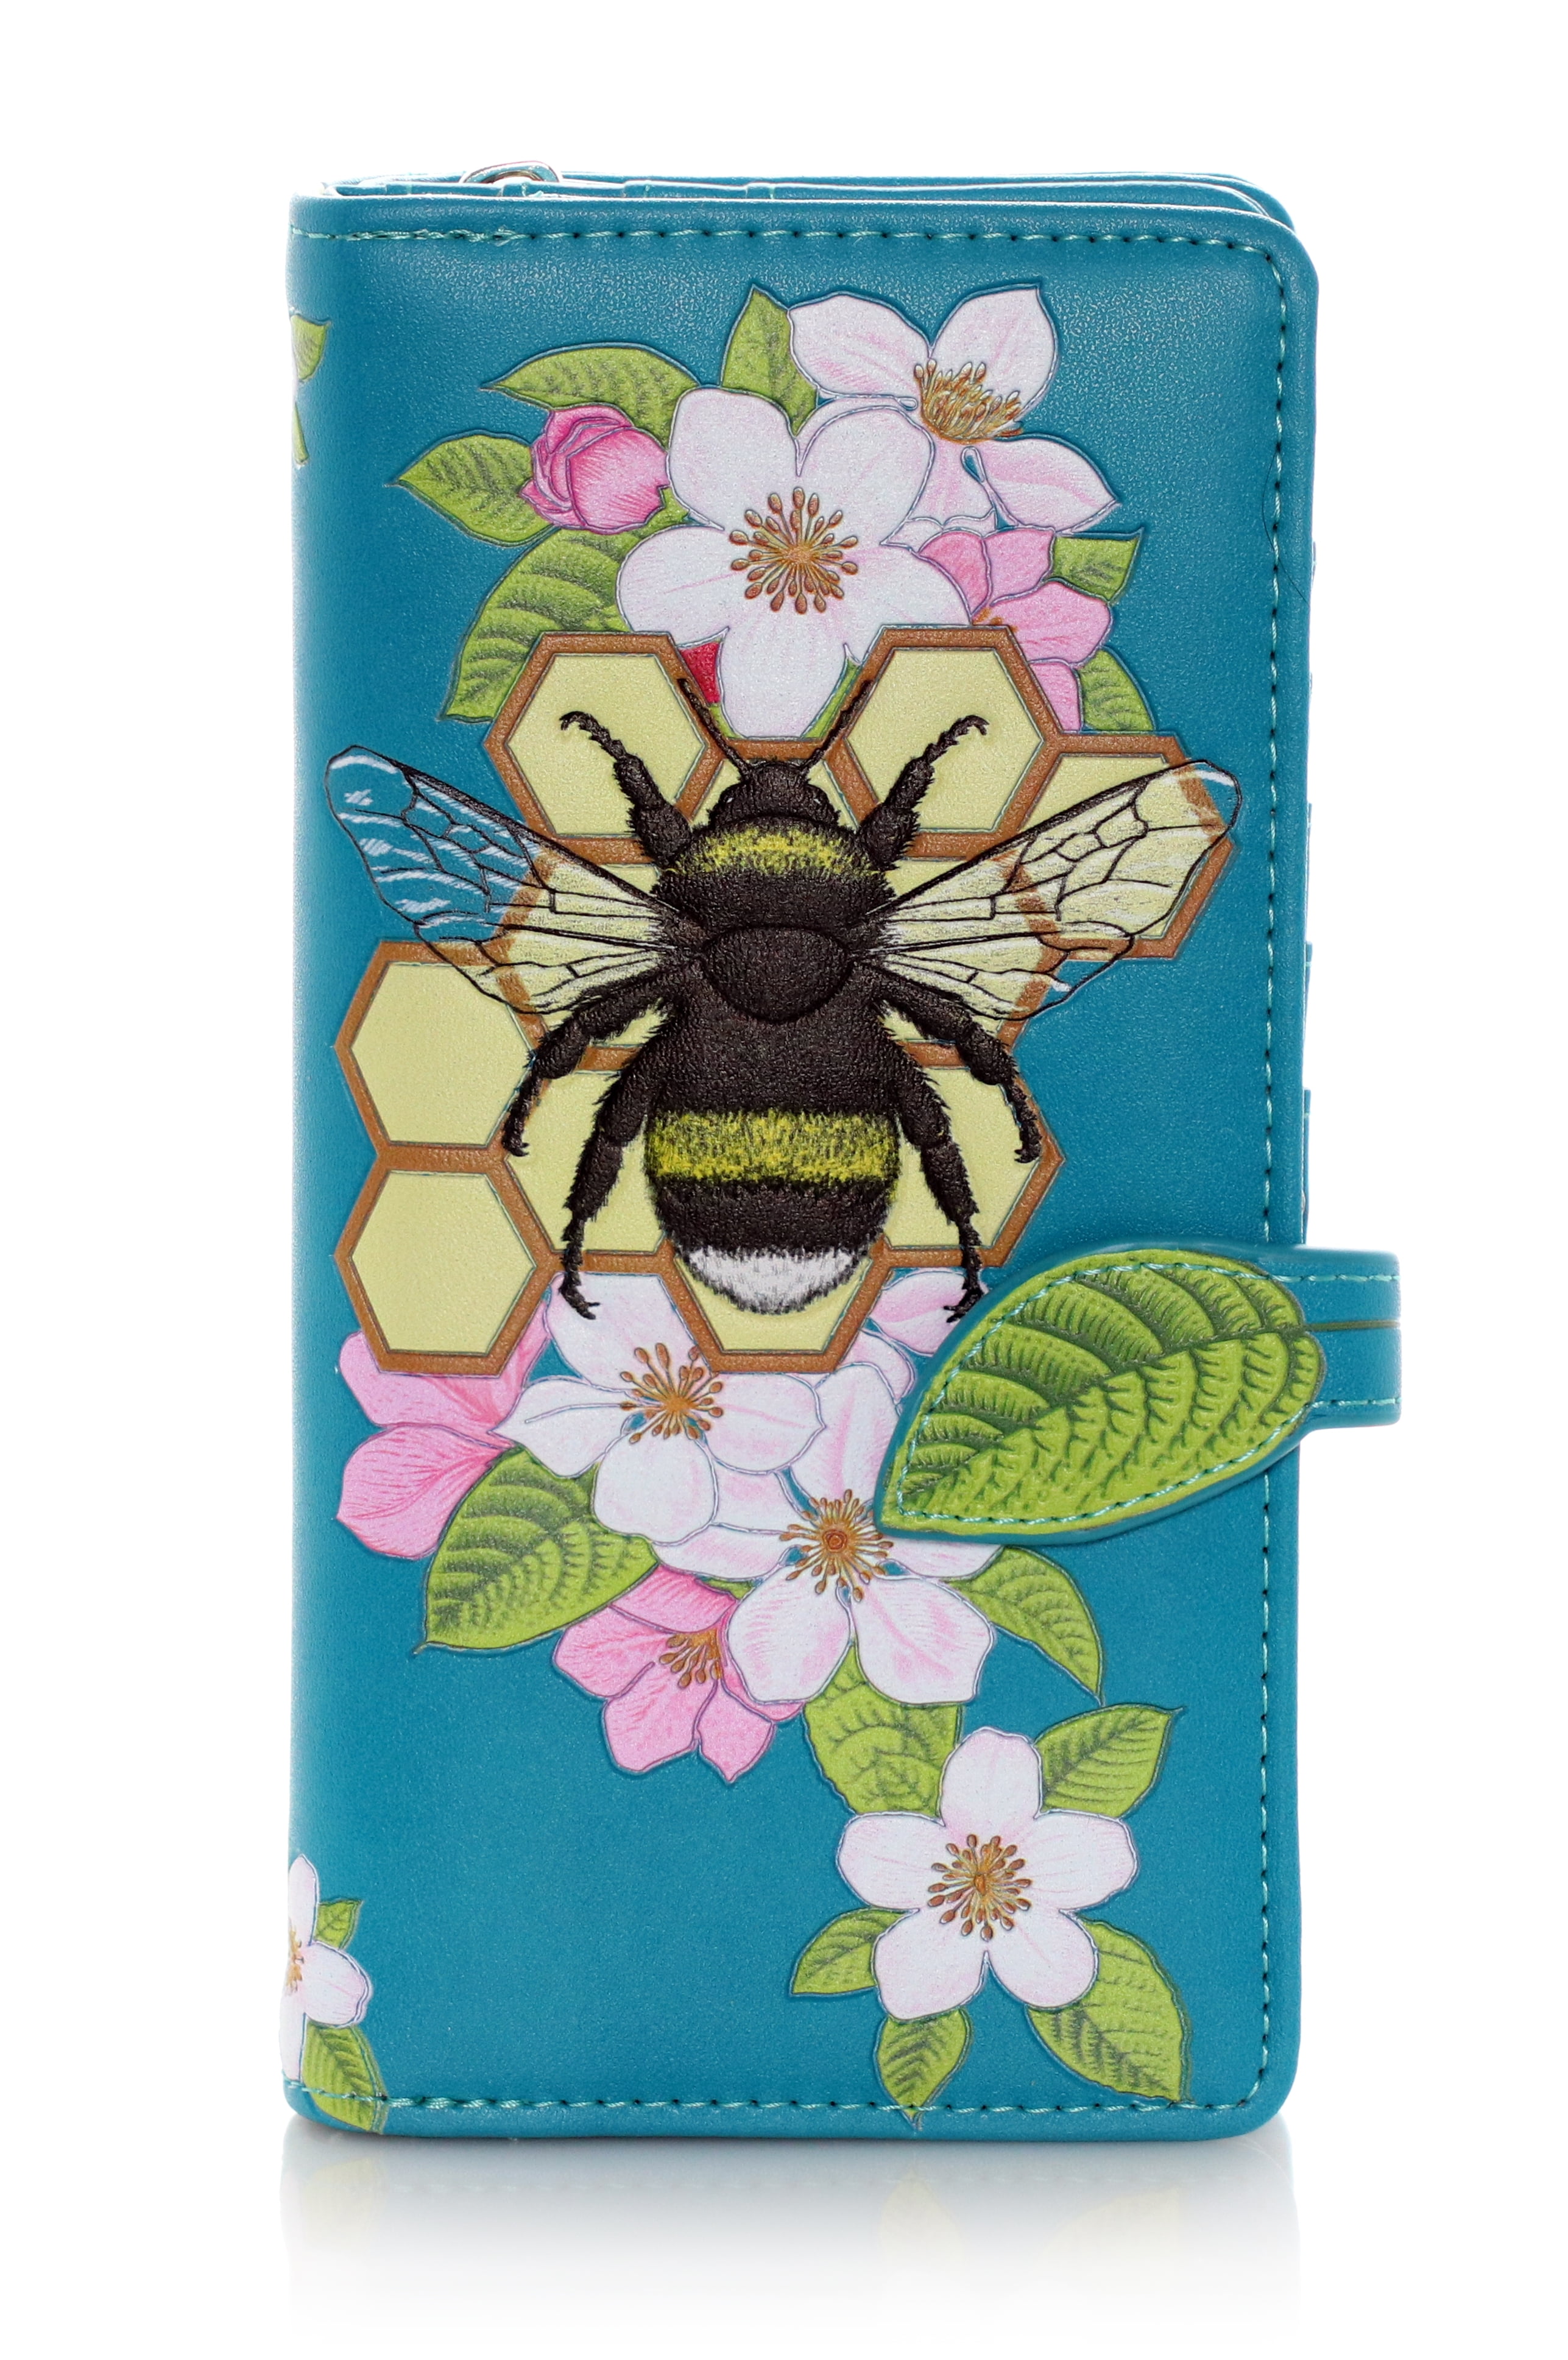 Shagwear Bumblebee Tattoo Pattern Large Zipper Women's Wallet (Teal ...